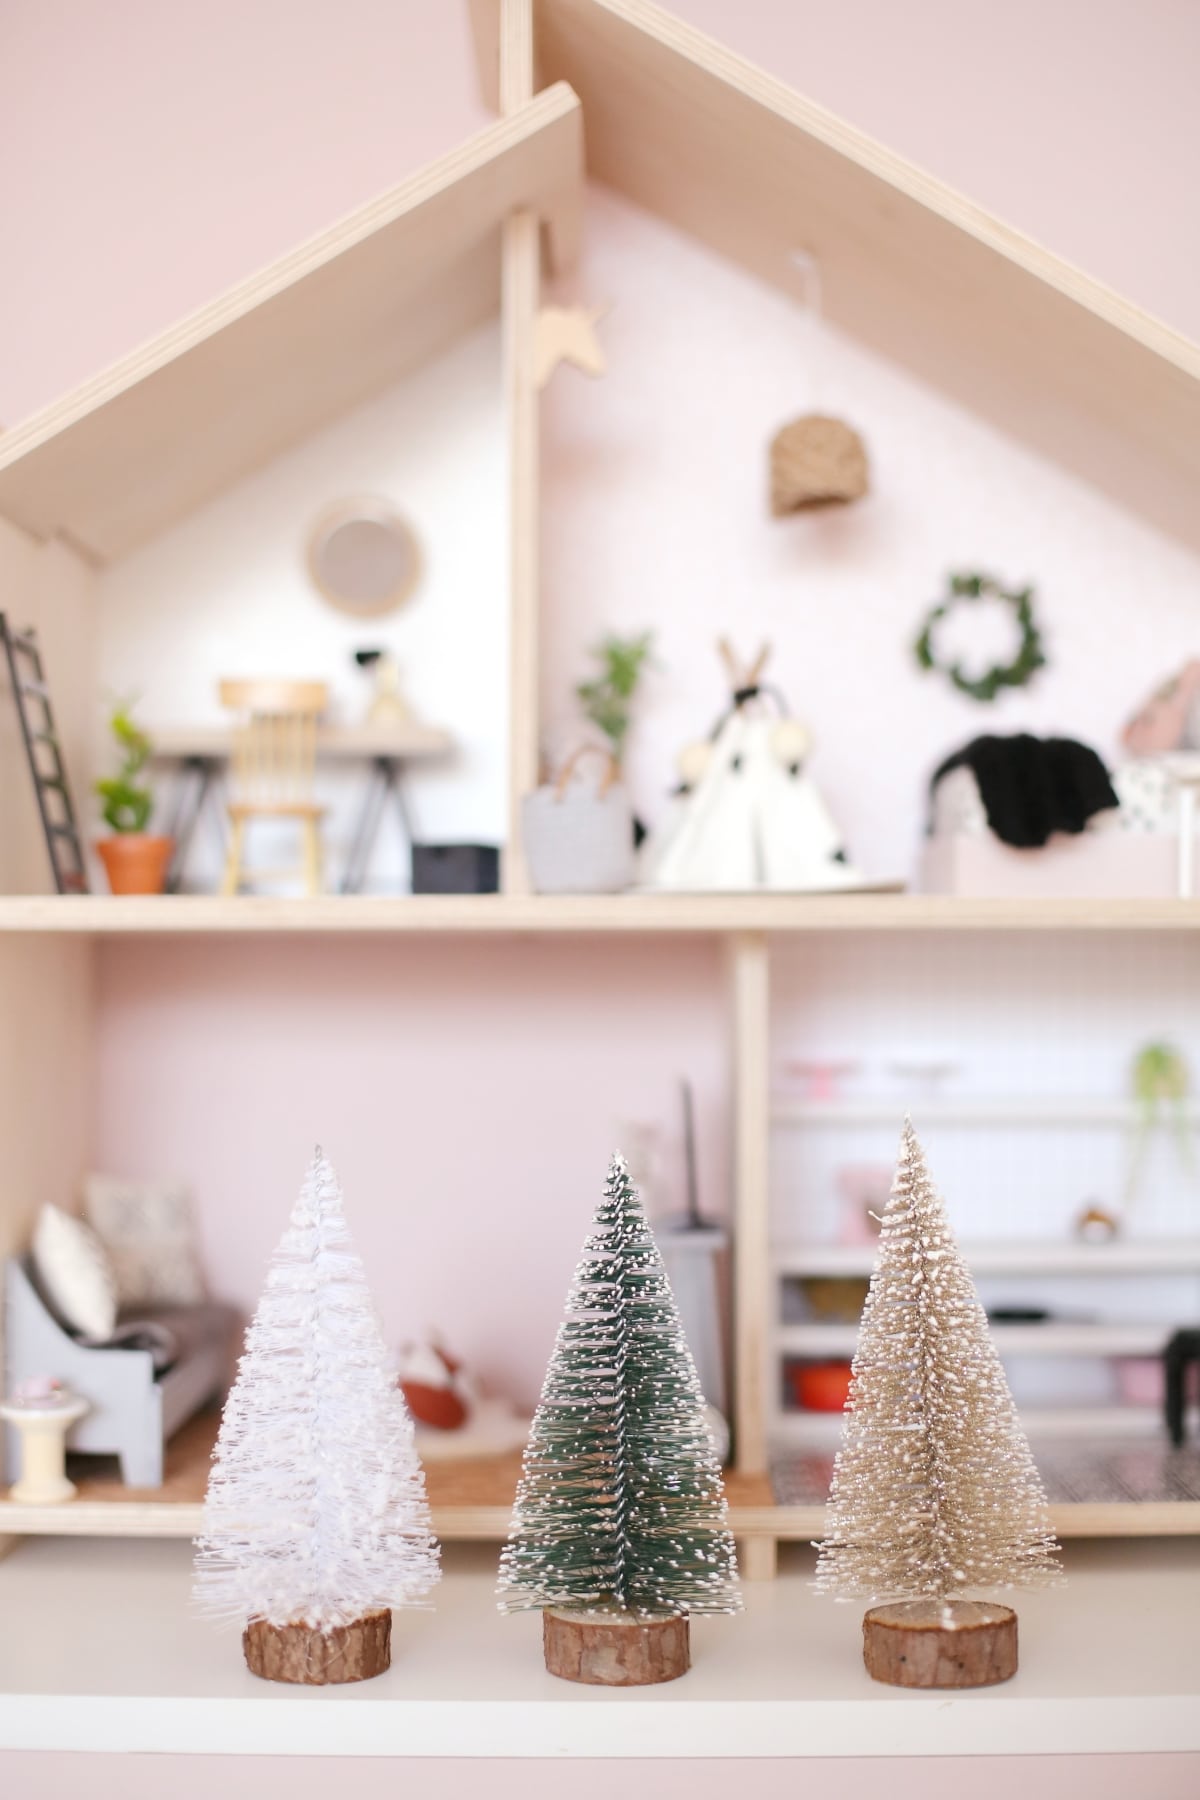 Miniature Dollhouse Sisal Christmas Trees available on The Tiny Dollhouse SA